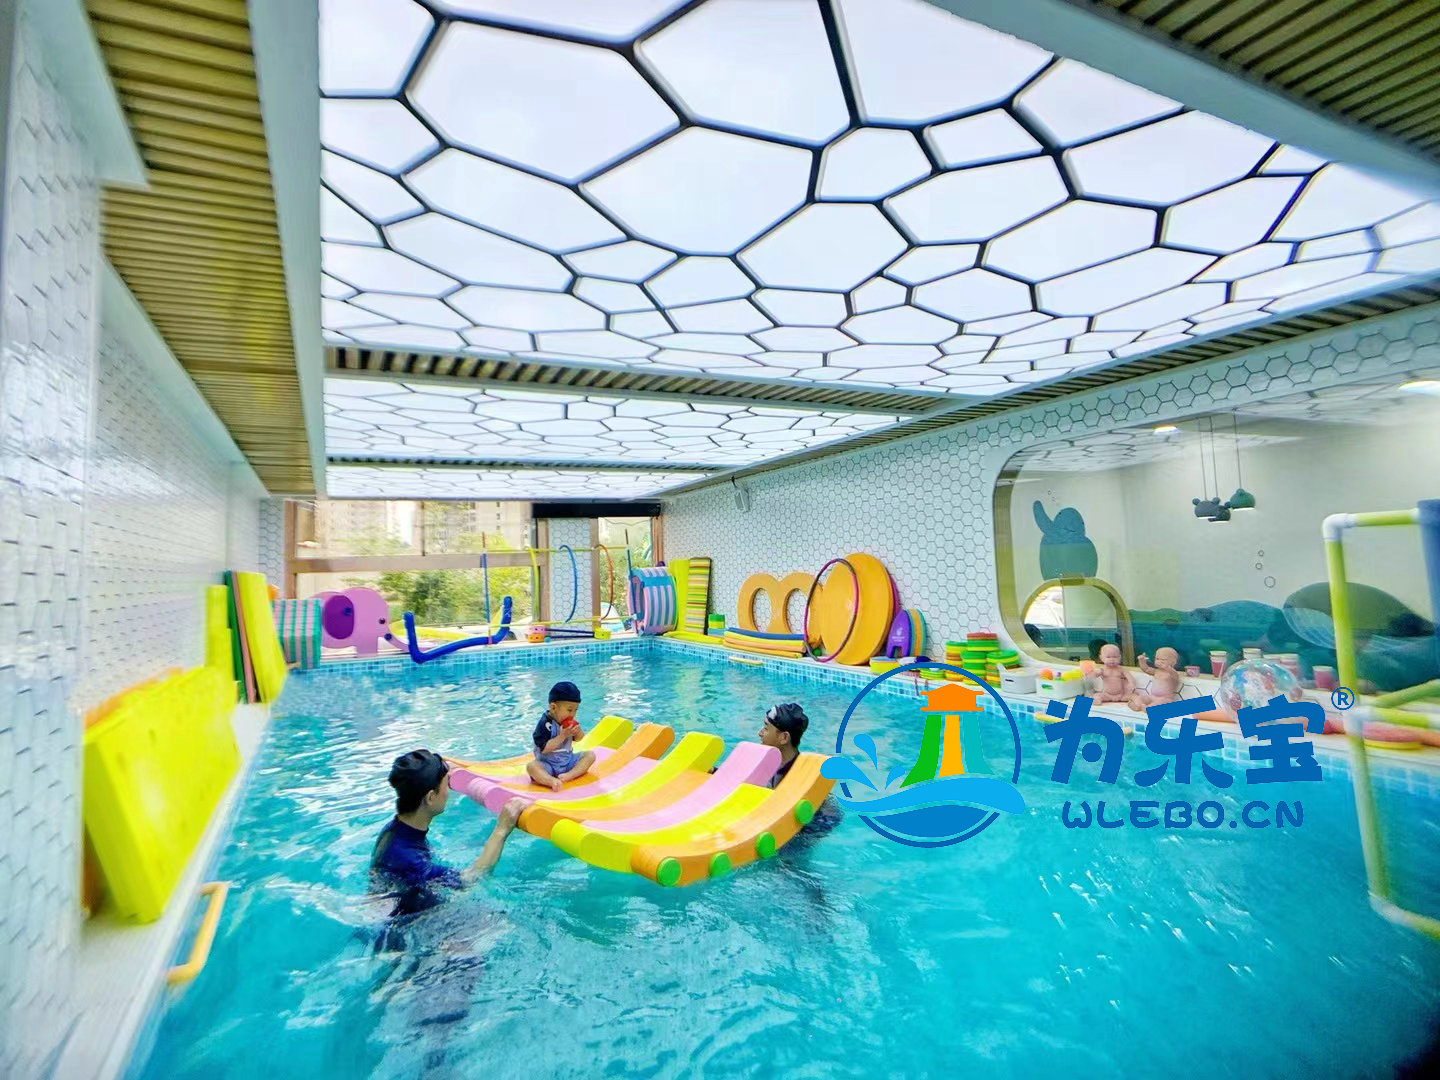 山东青岛钢结构游泳池拼装游泳池定制安装厂家为乐宝